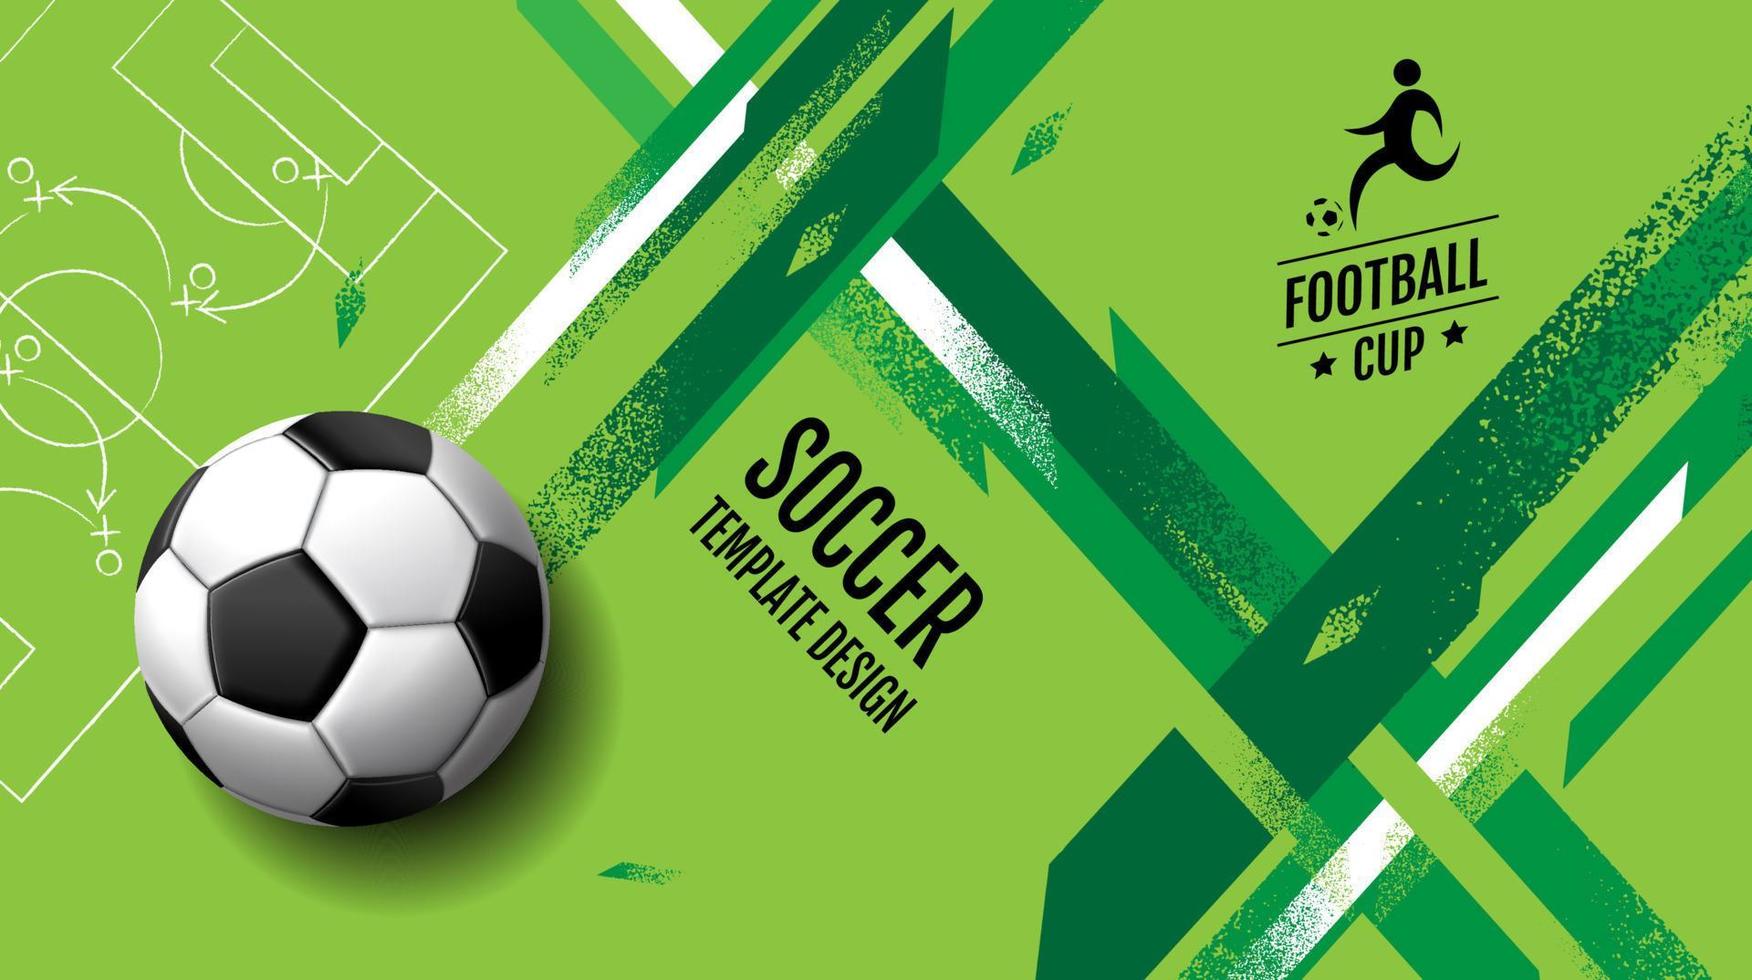 voetbal sjabloonontwerp, voetbalbanner, sportlay-outontwerp, groen thema, vector